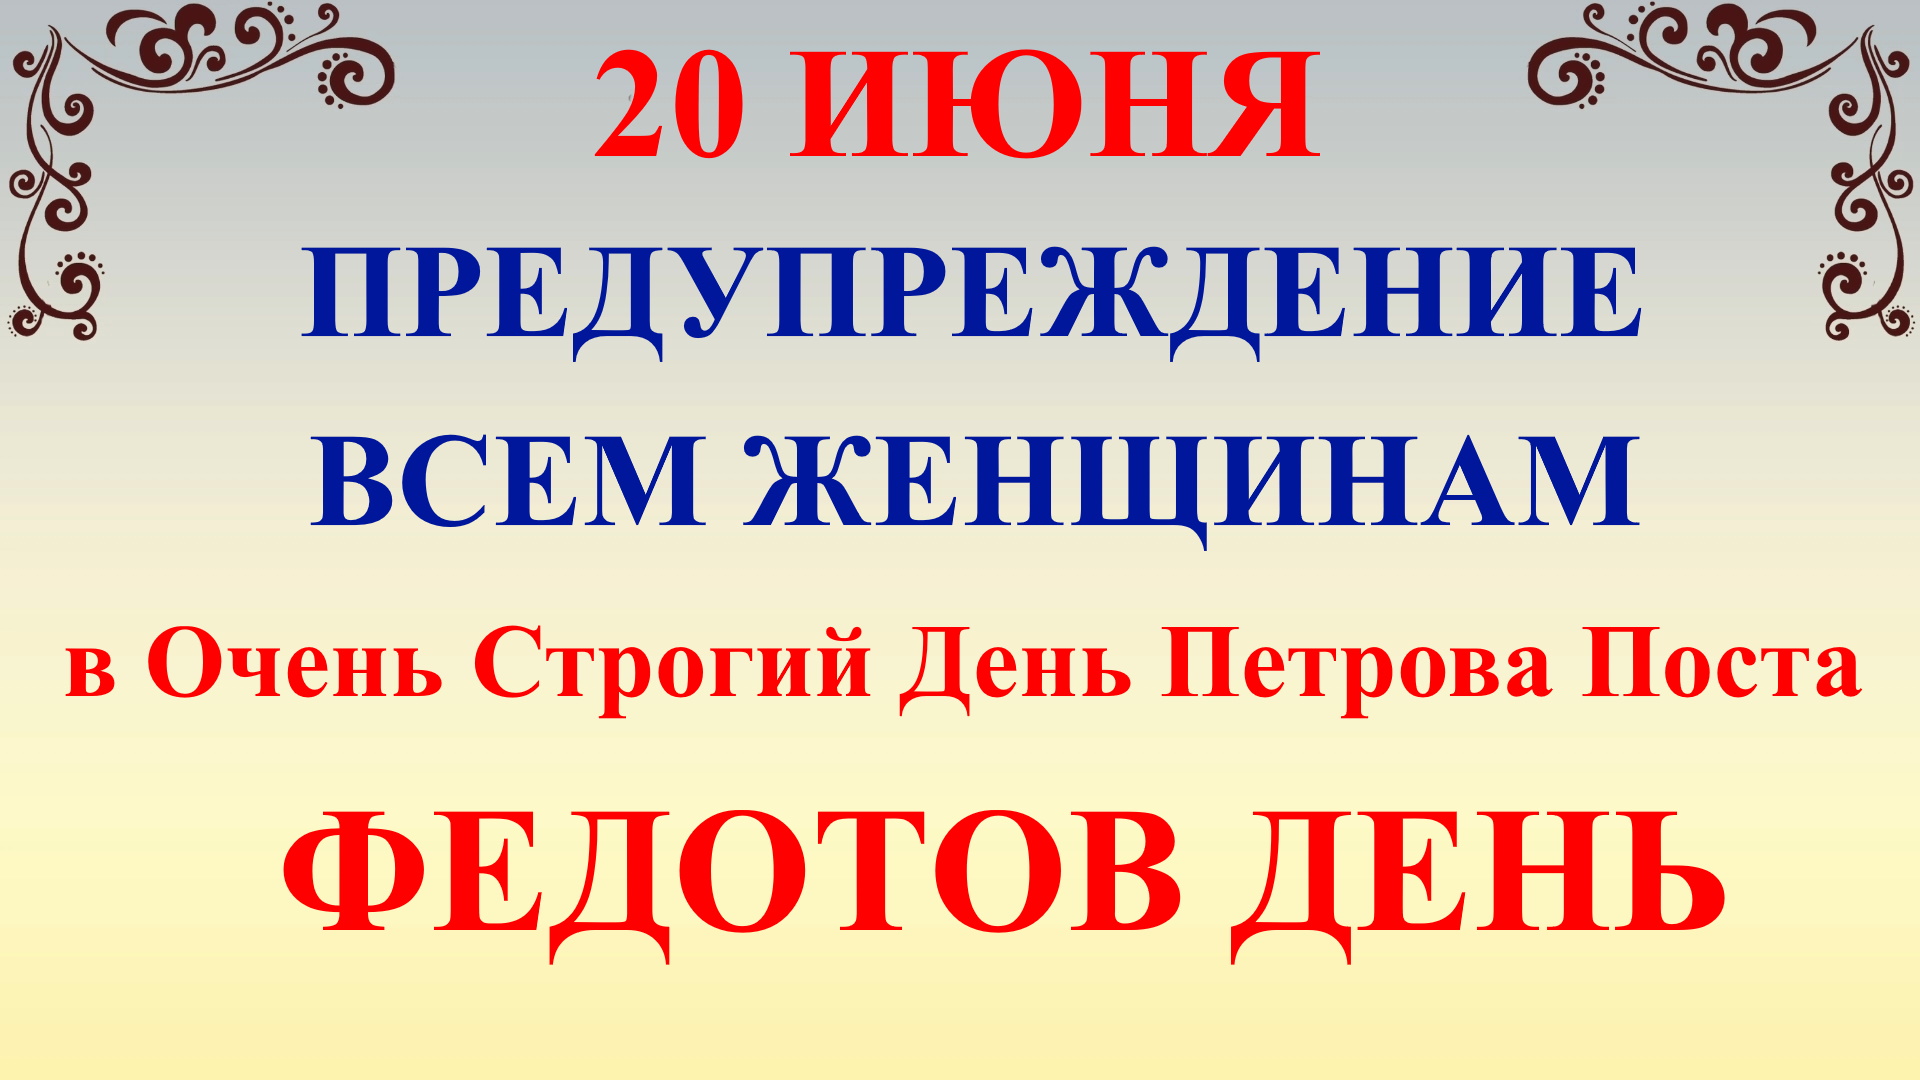 20 июня народный праздник Федотов День. Петров Пост. Что нельзя делать. Народные традиции и приметы